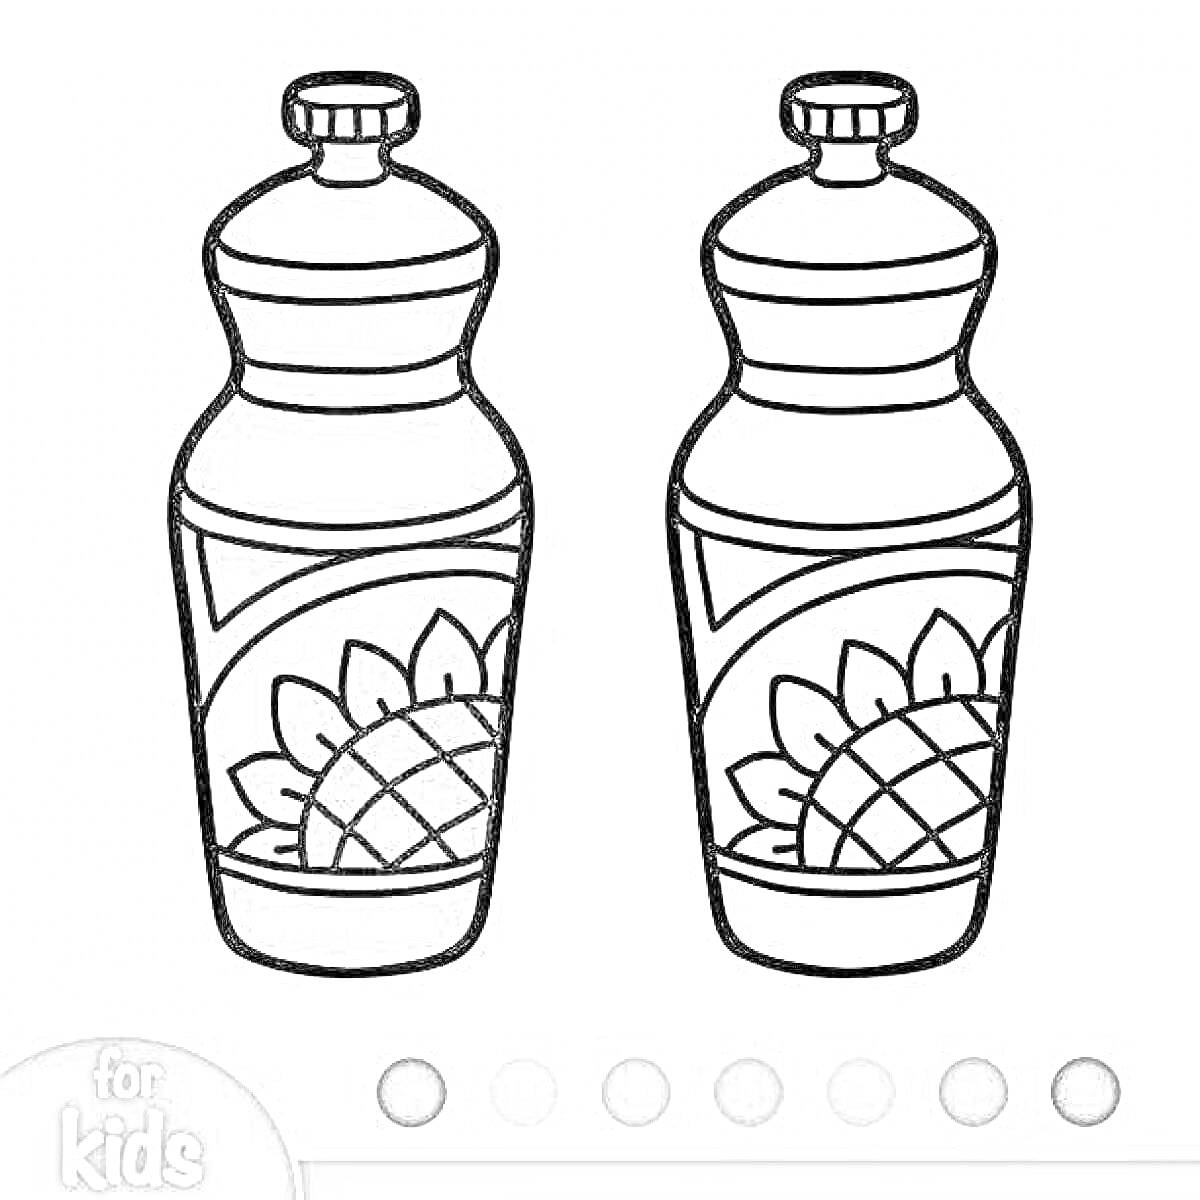 Раскраска Две бутылки с подсолнечным маслом, одна разукрашенная, вторая контурная, с рисунком подсолнечника